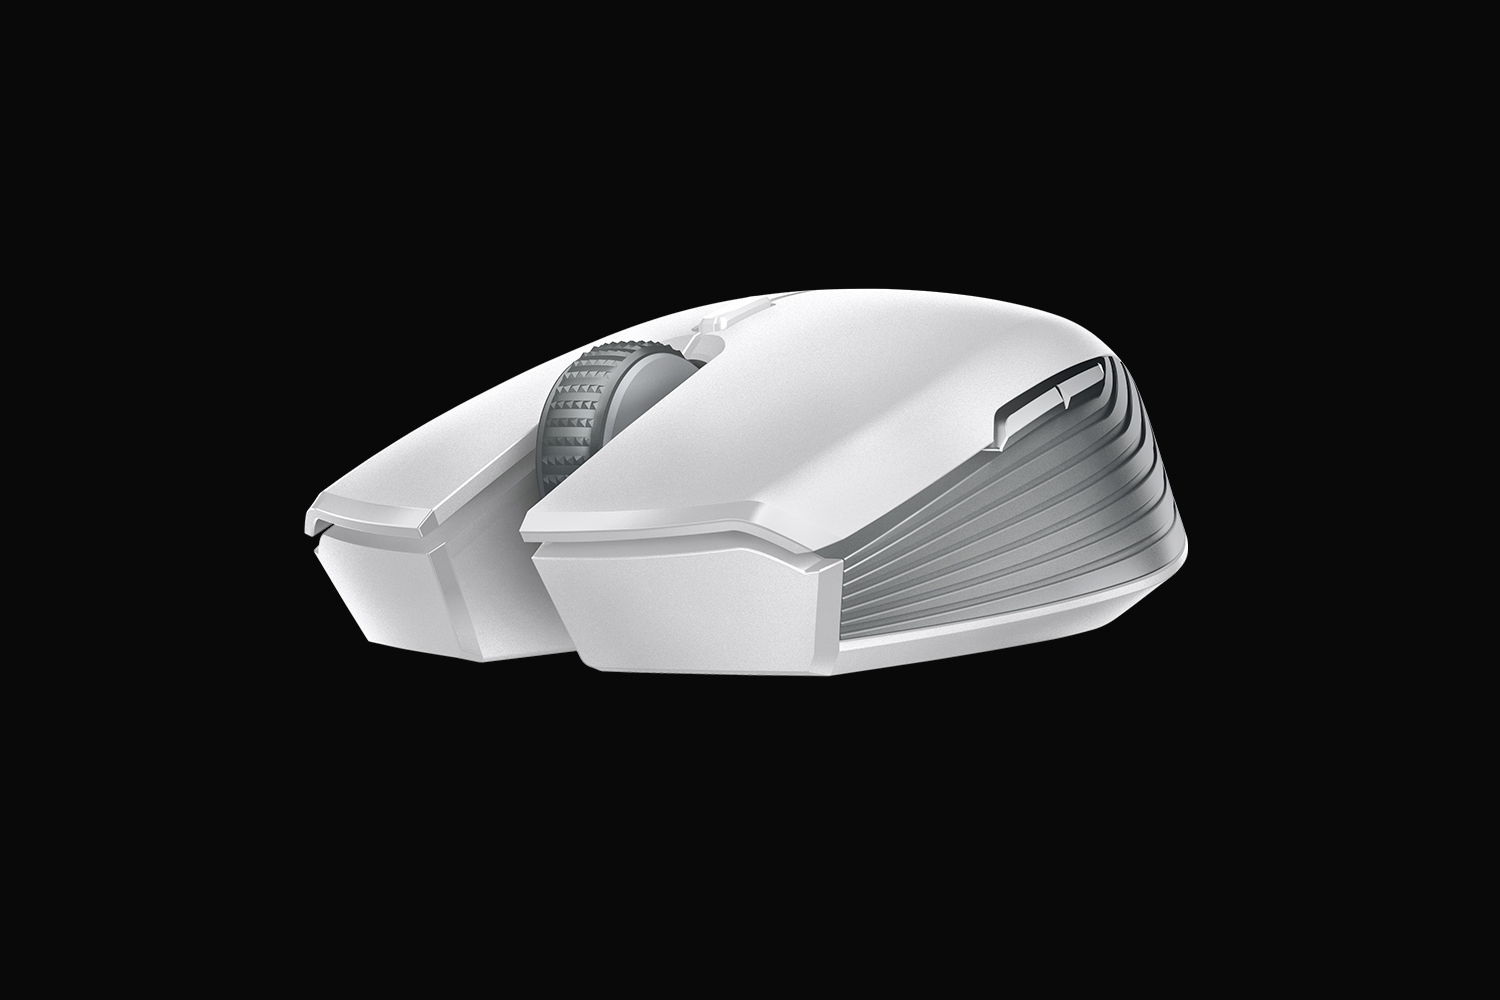 Mouse gamer Atheris da Razer é sem fio e promete até 350 horas de bateria